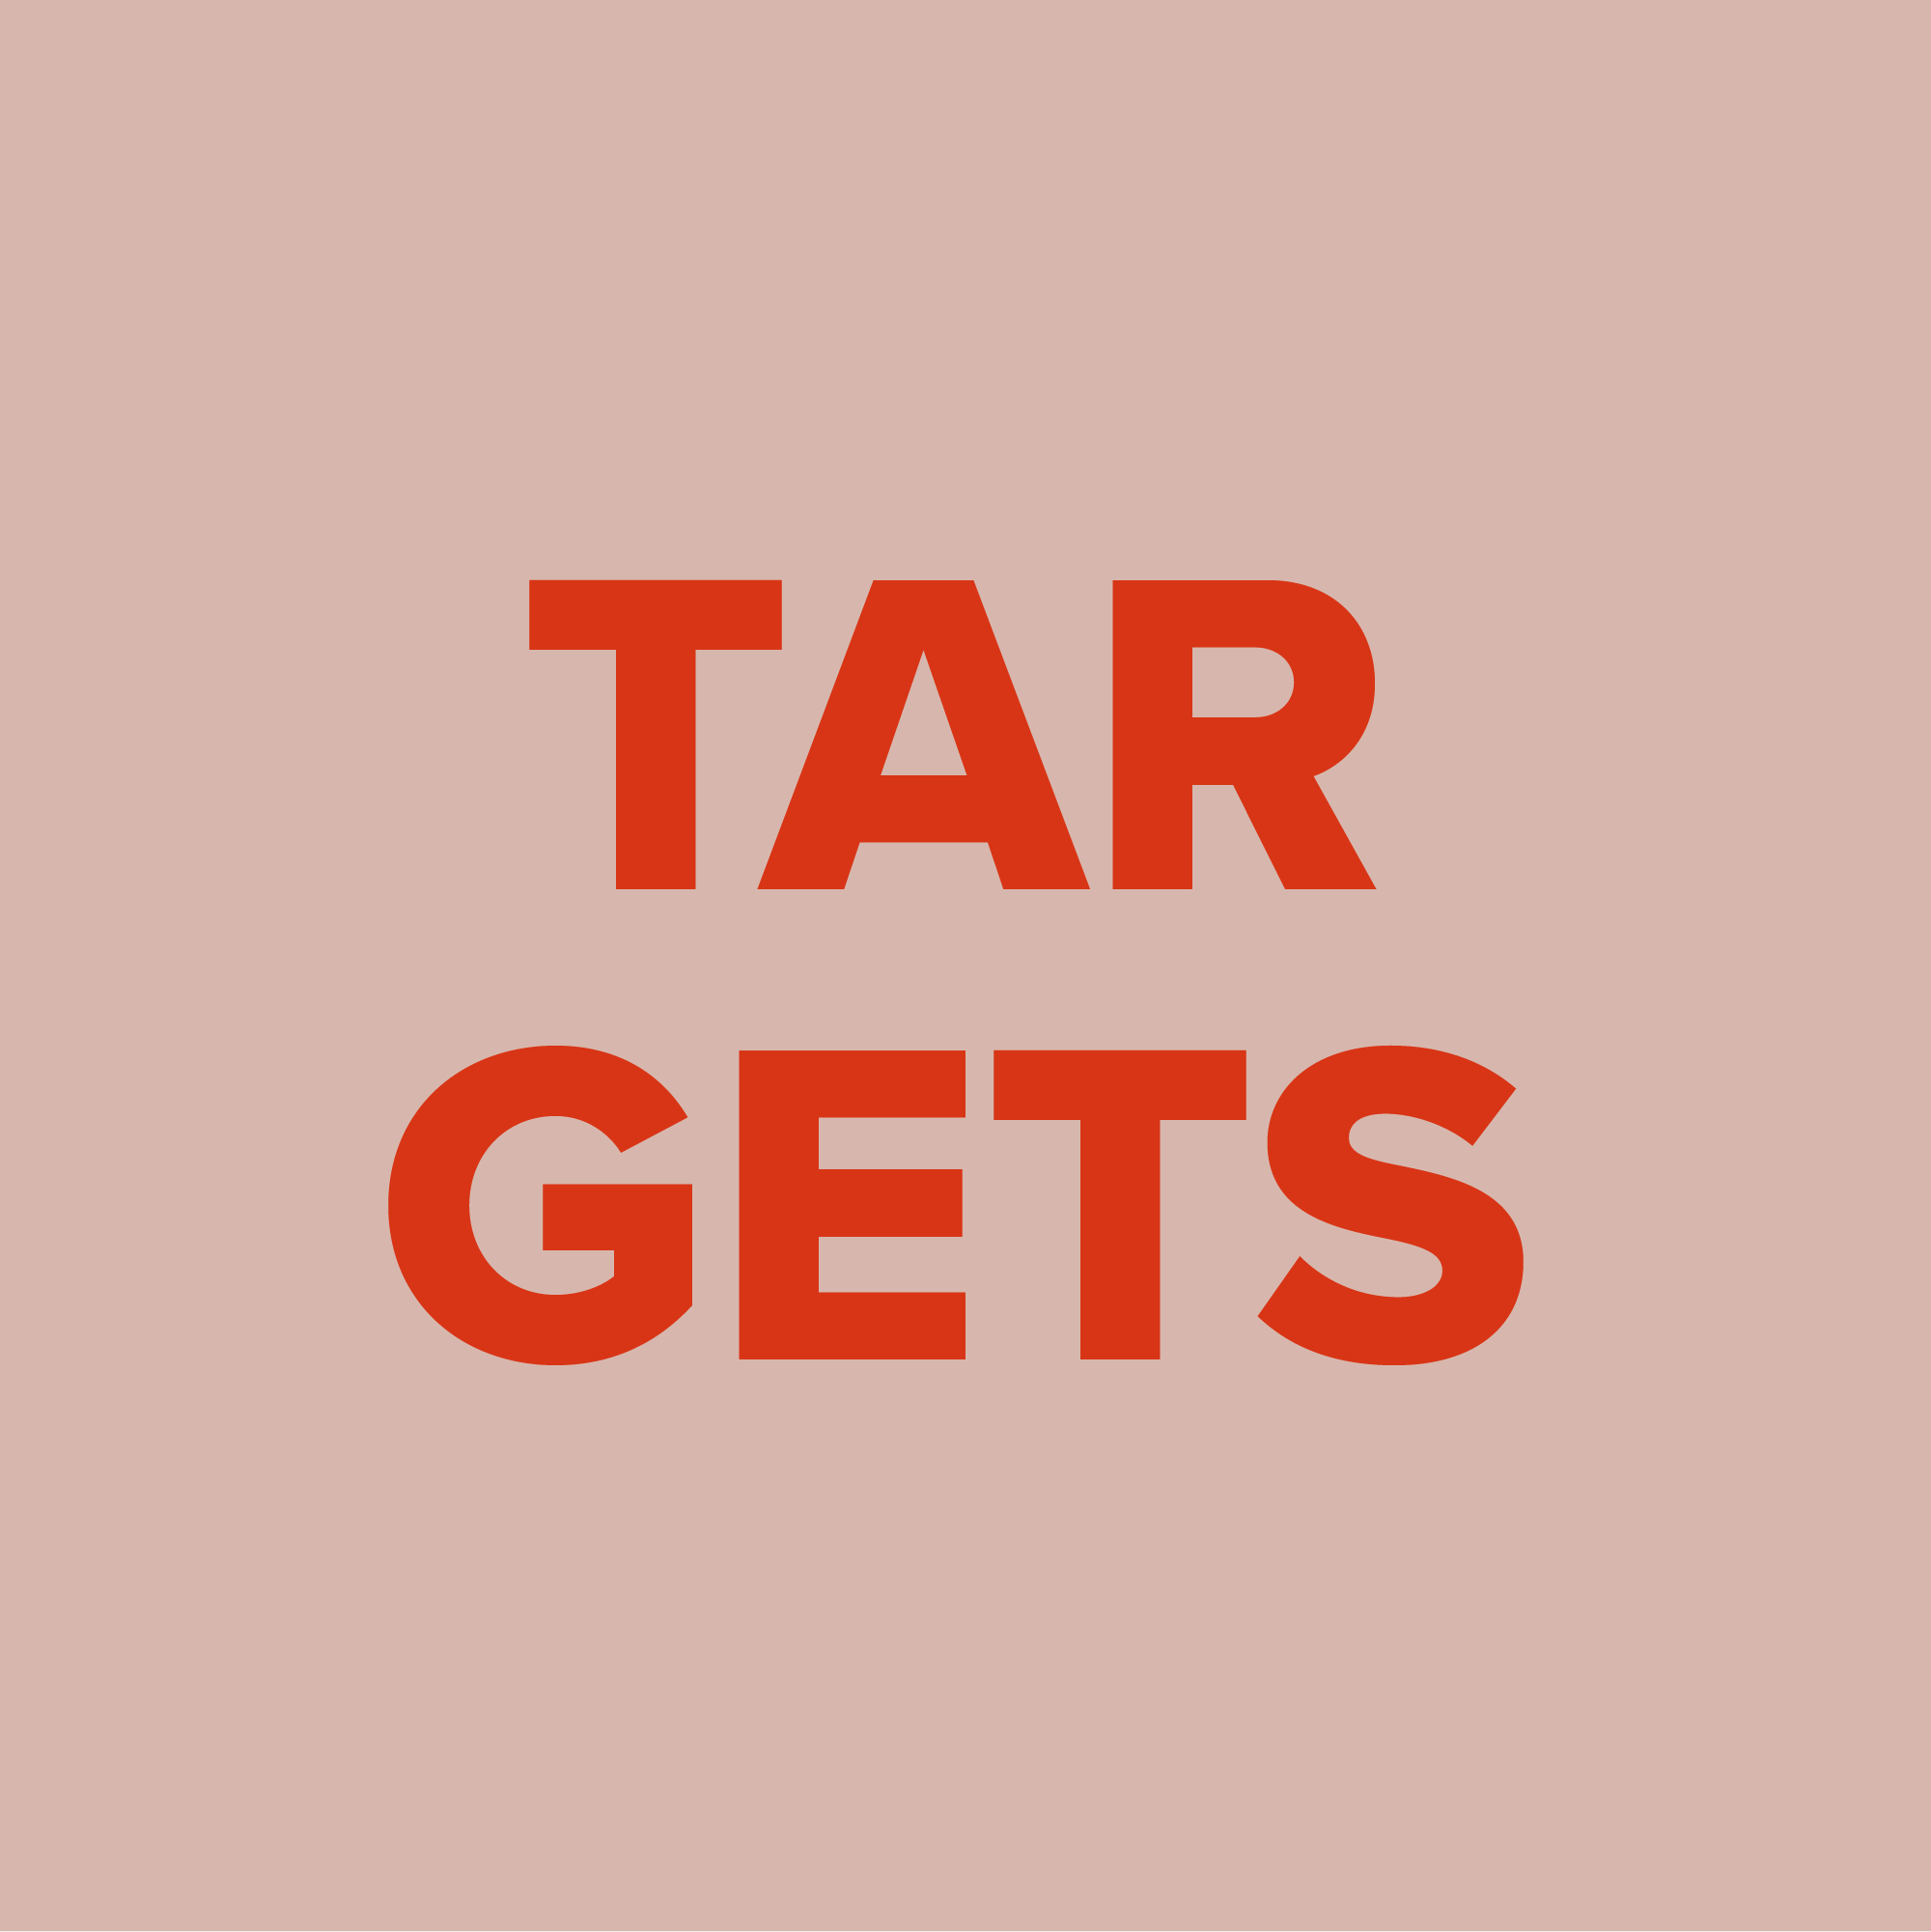 Dieses Bild enthält den Text "Targets" (deutsch: "Ziele") und soll anschaulich für die verlässliche Dauer der Erstellung einer Website bei Uppertree daneben sein.